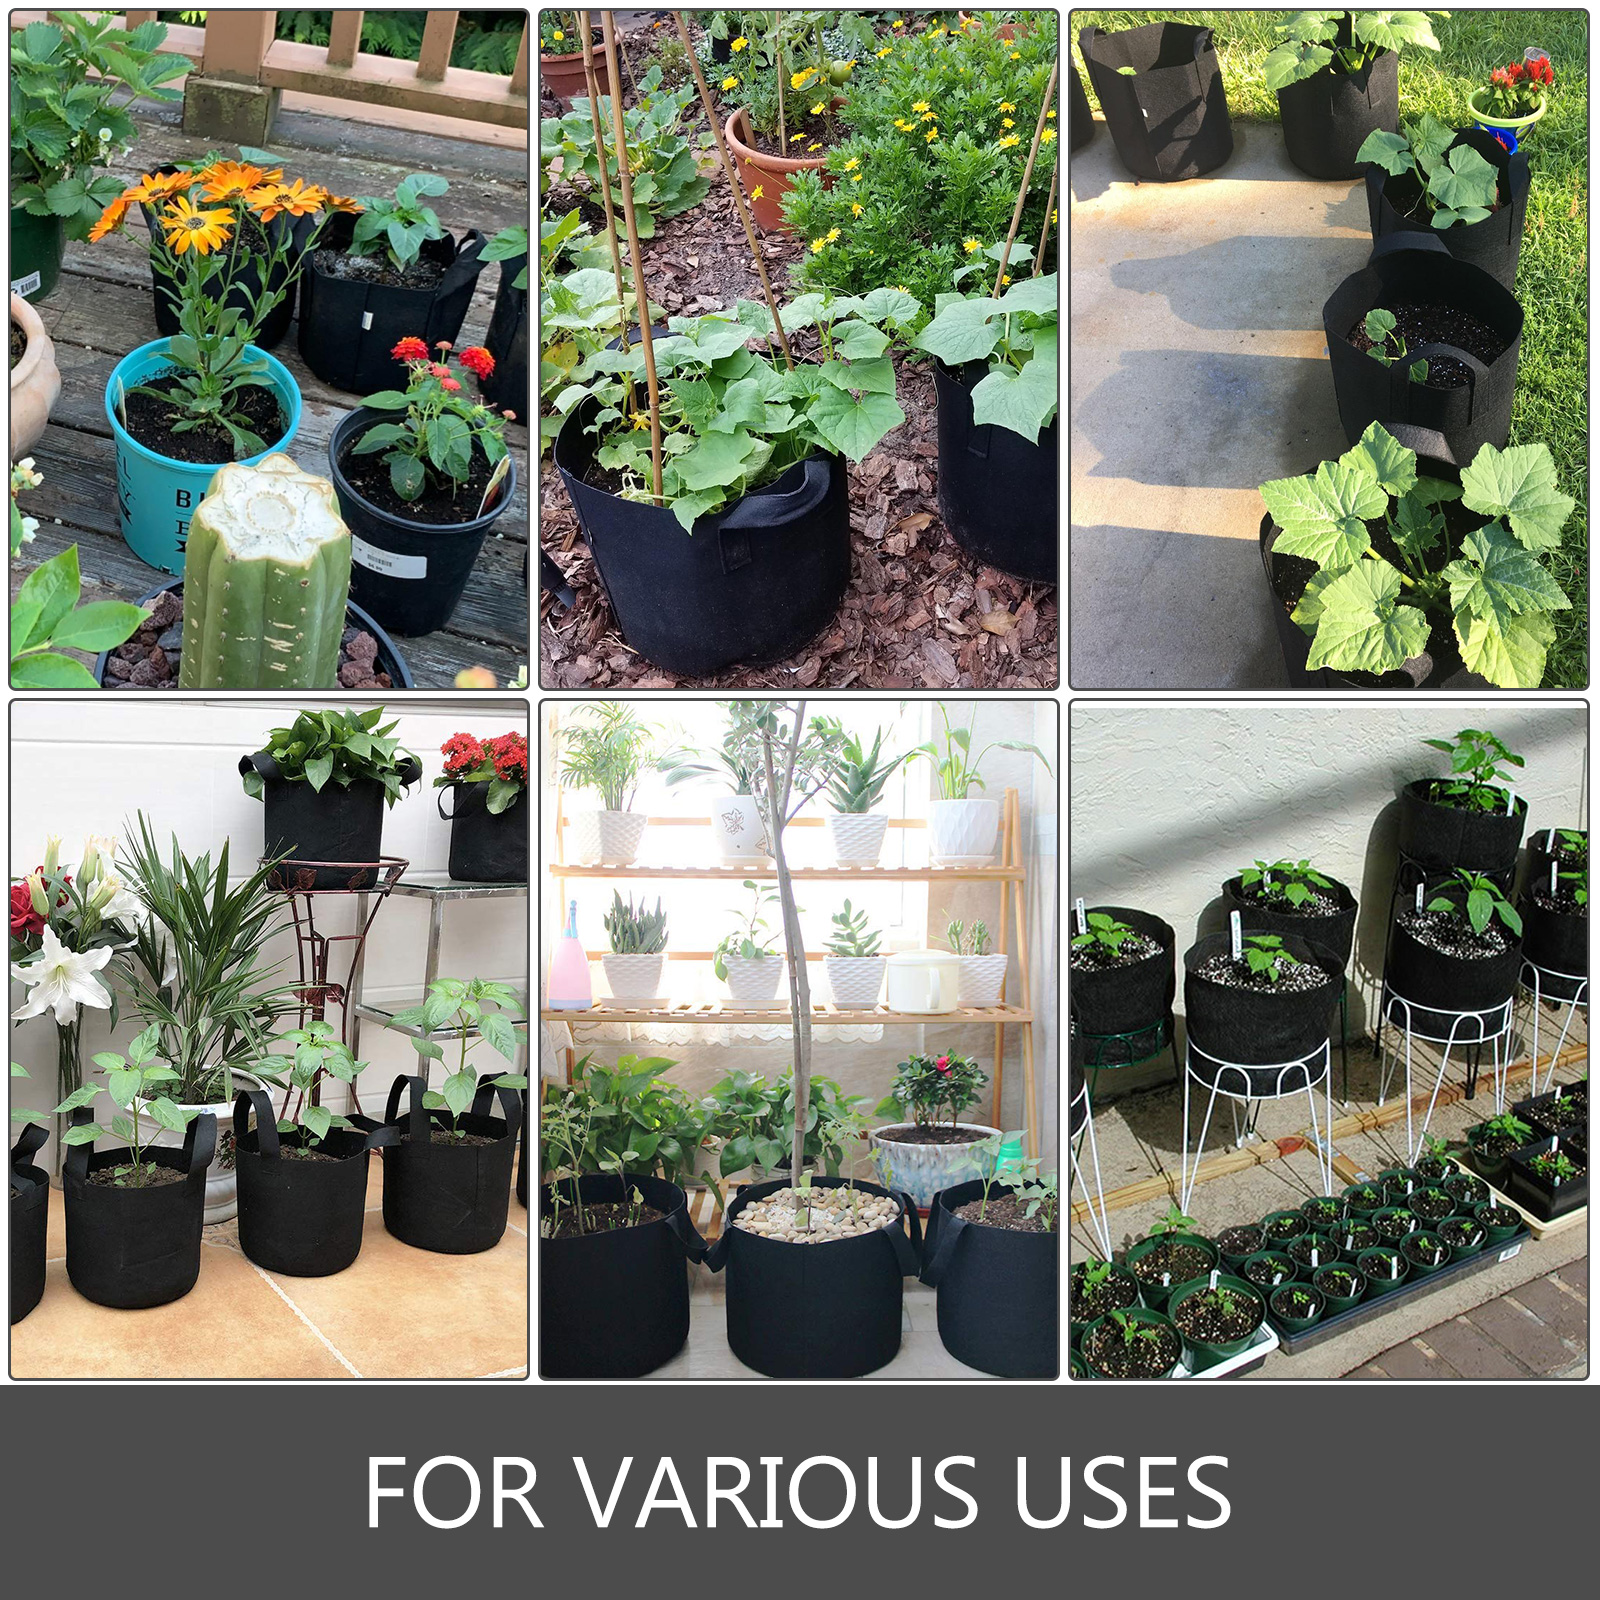 2 Pack!! 10 Gallon Premium Vegetable Grow Bags, Garden Vegetables Planter  Aeration Pot Box - Garden Items, Facebook Marketplace